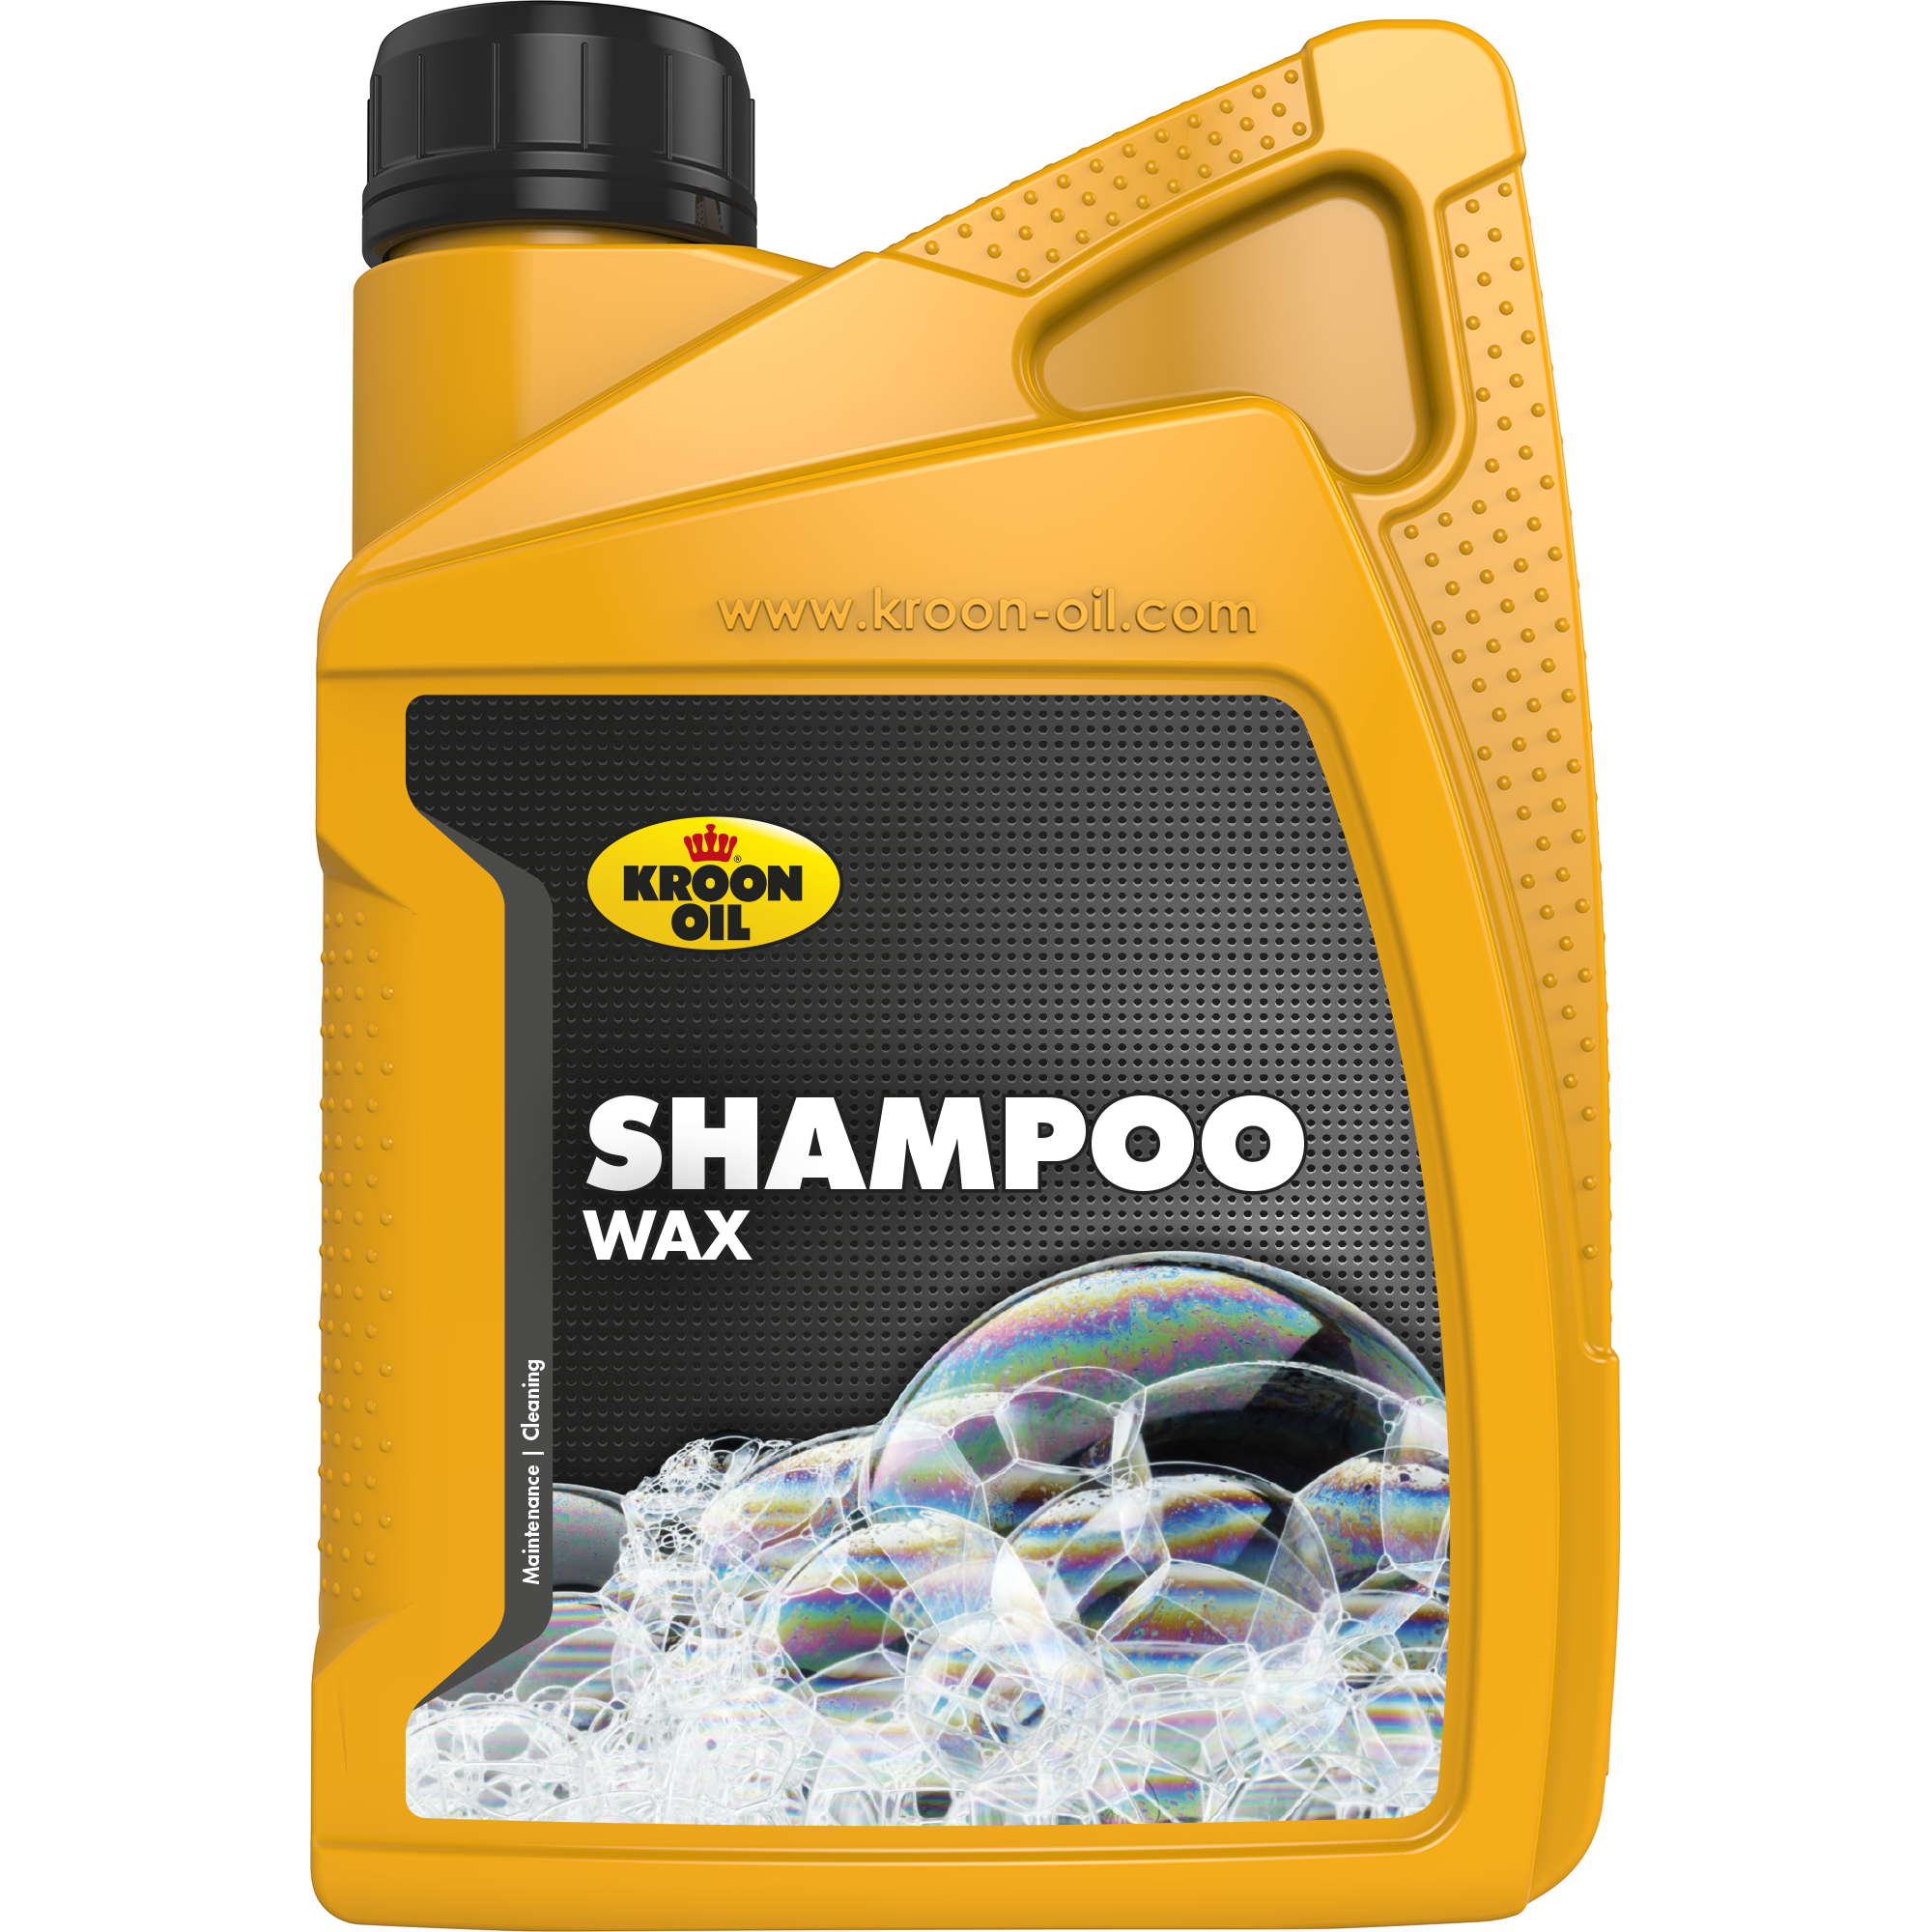 Kroon-Oil Shampoo Wax, 1 lt